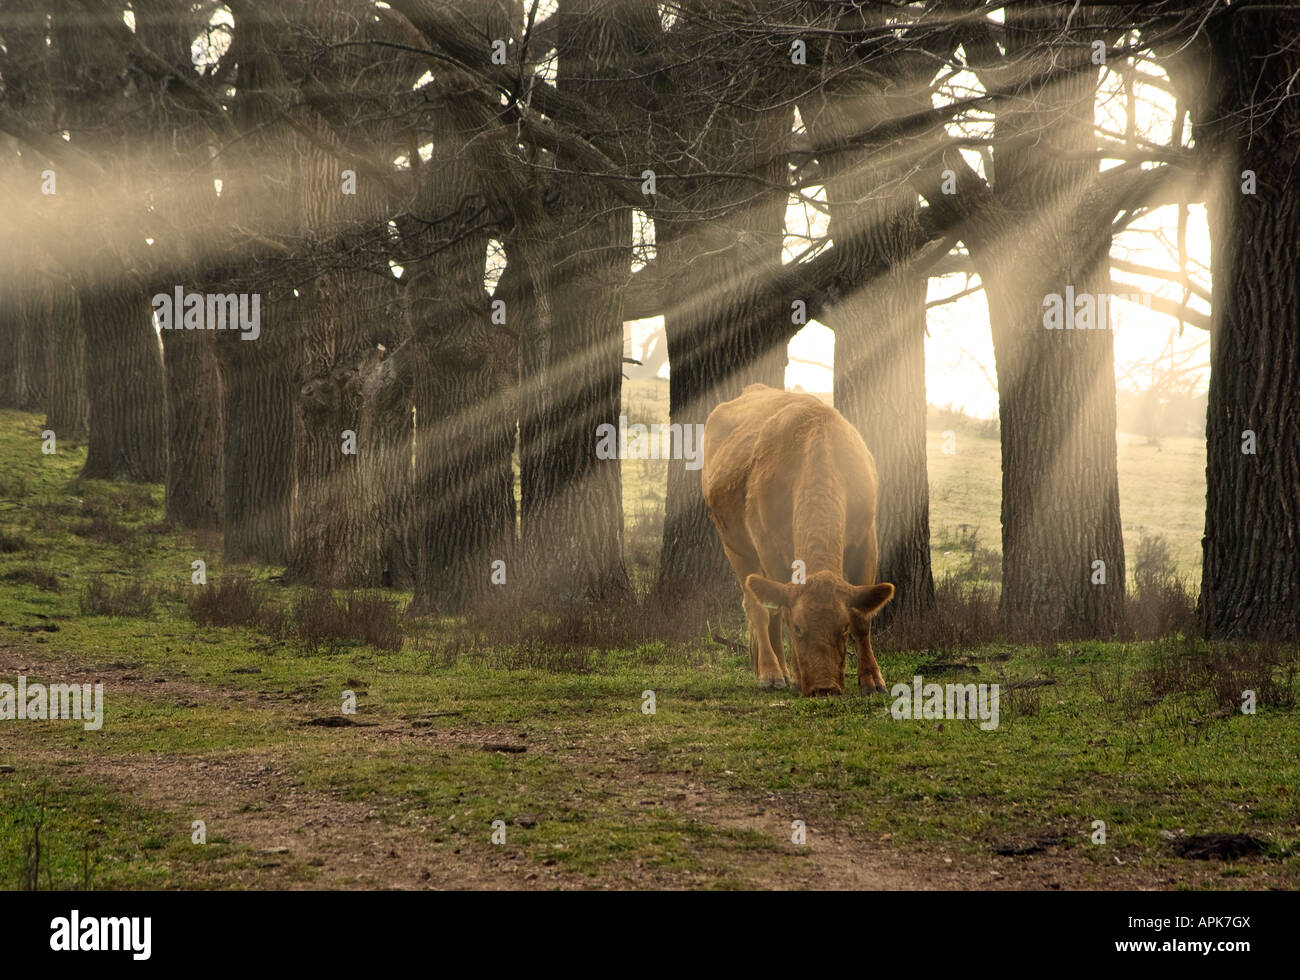 Una vaca come hierba en la mañana con rayos de sol que entra a través de los árboles Foto de stock